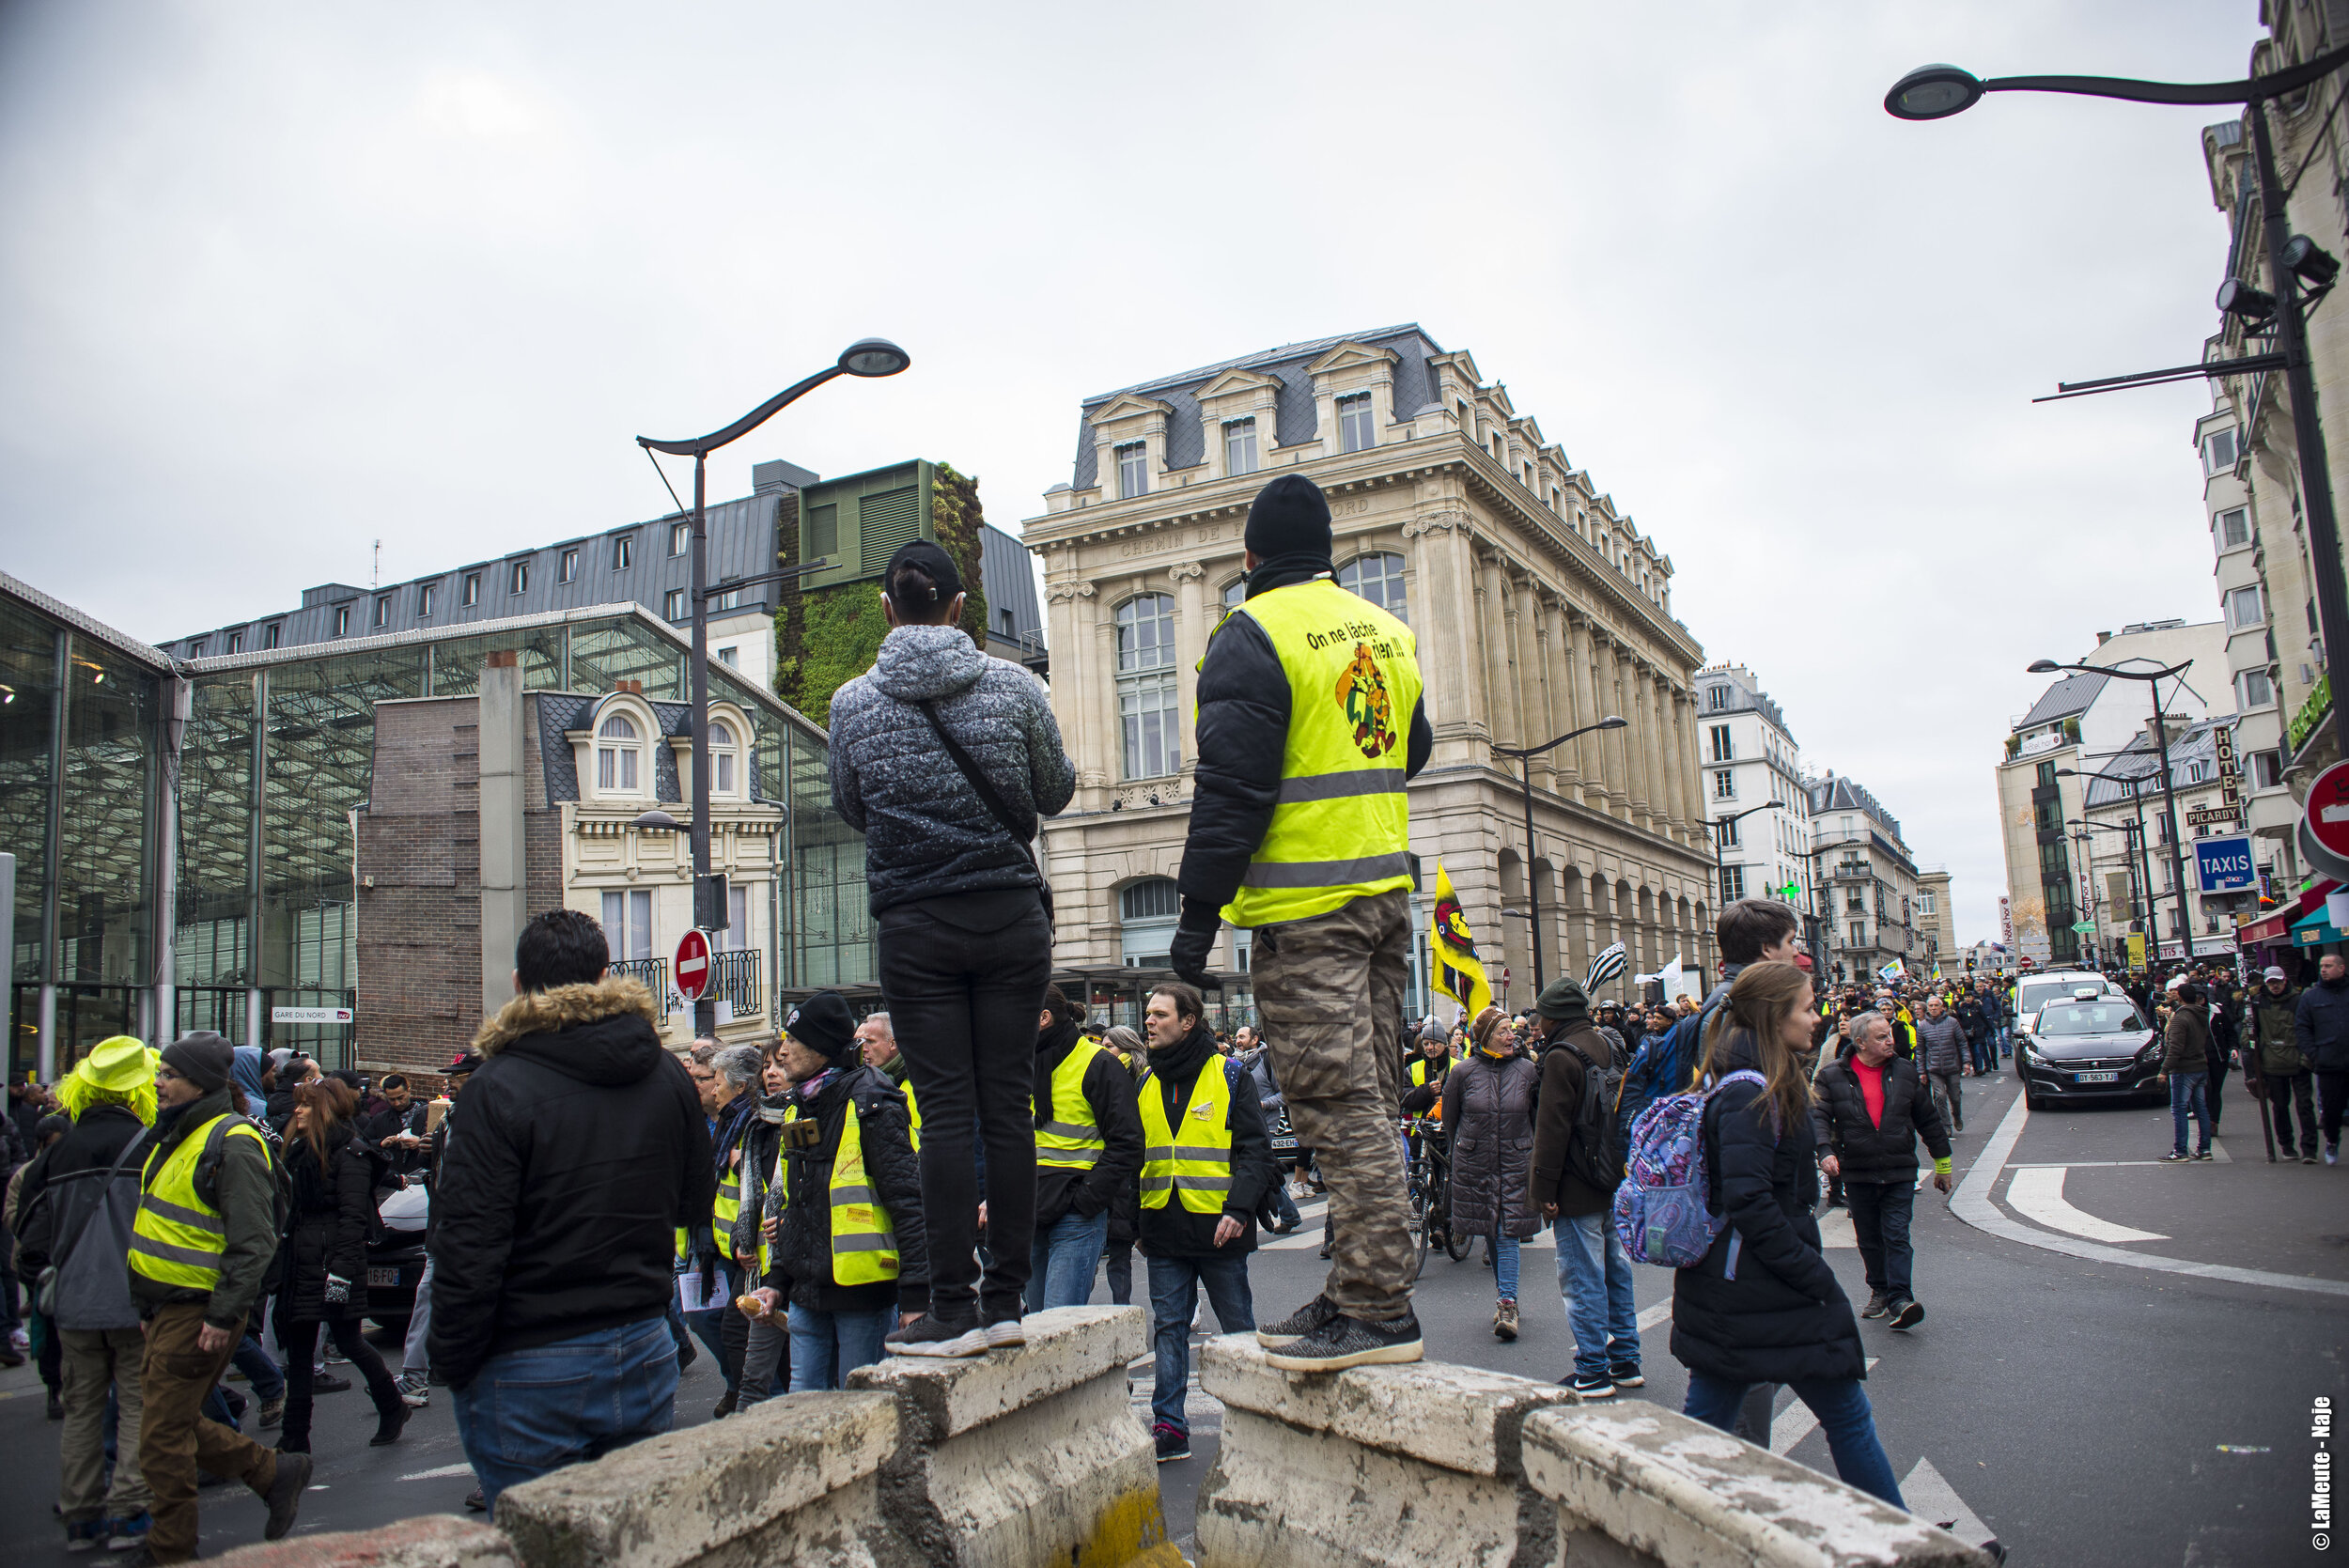   Deux manifestants prennent un peu de hauteur pour observer la foule remplir peu à peu l’esplanade face à la gare.  ©LaMeute - Naje.      